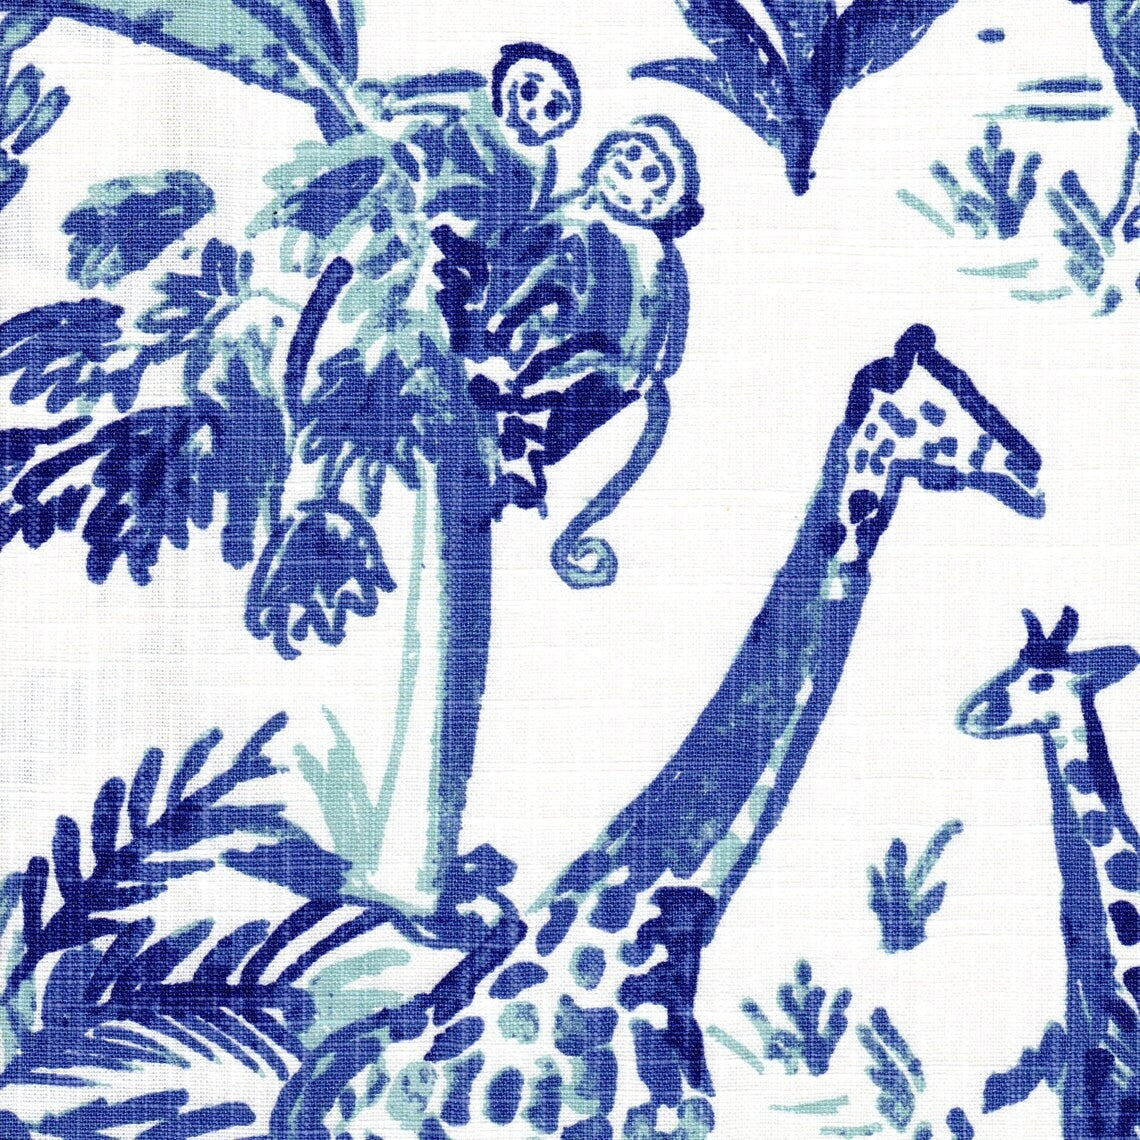 scallop valance in meru commodore blue, cancun blue safari animal toile